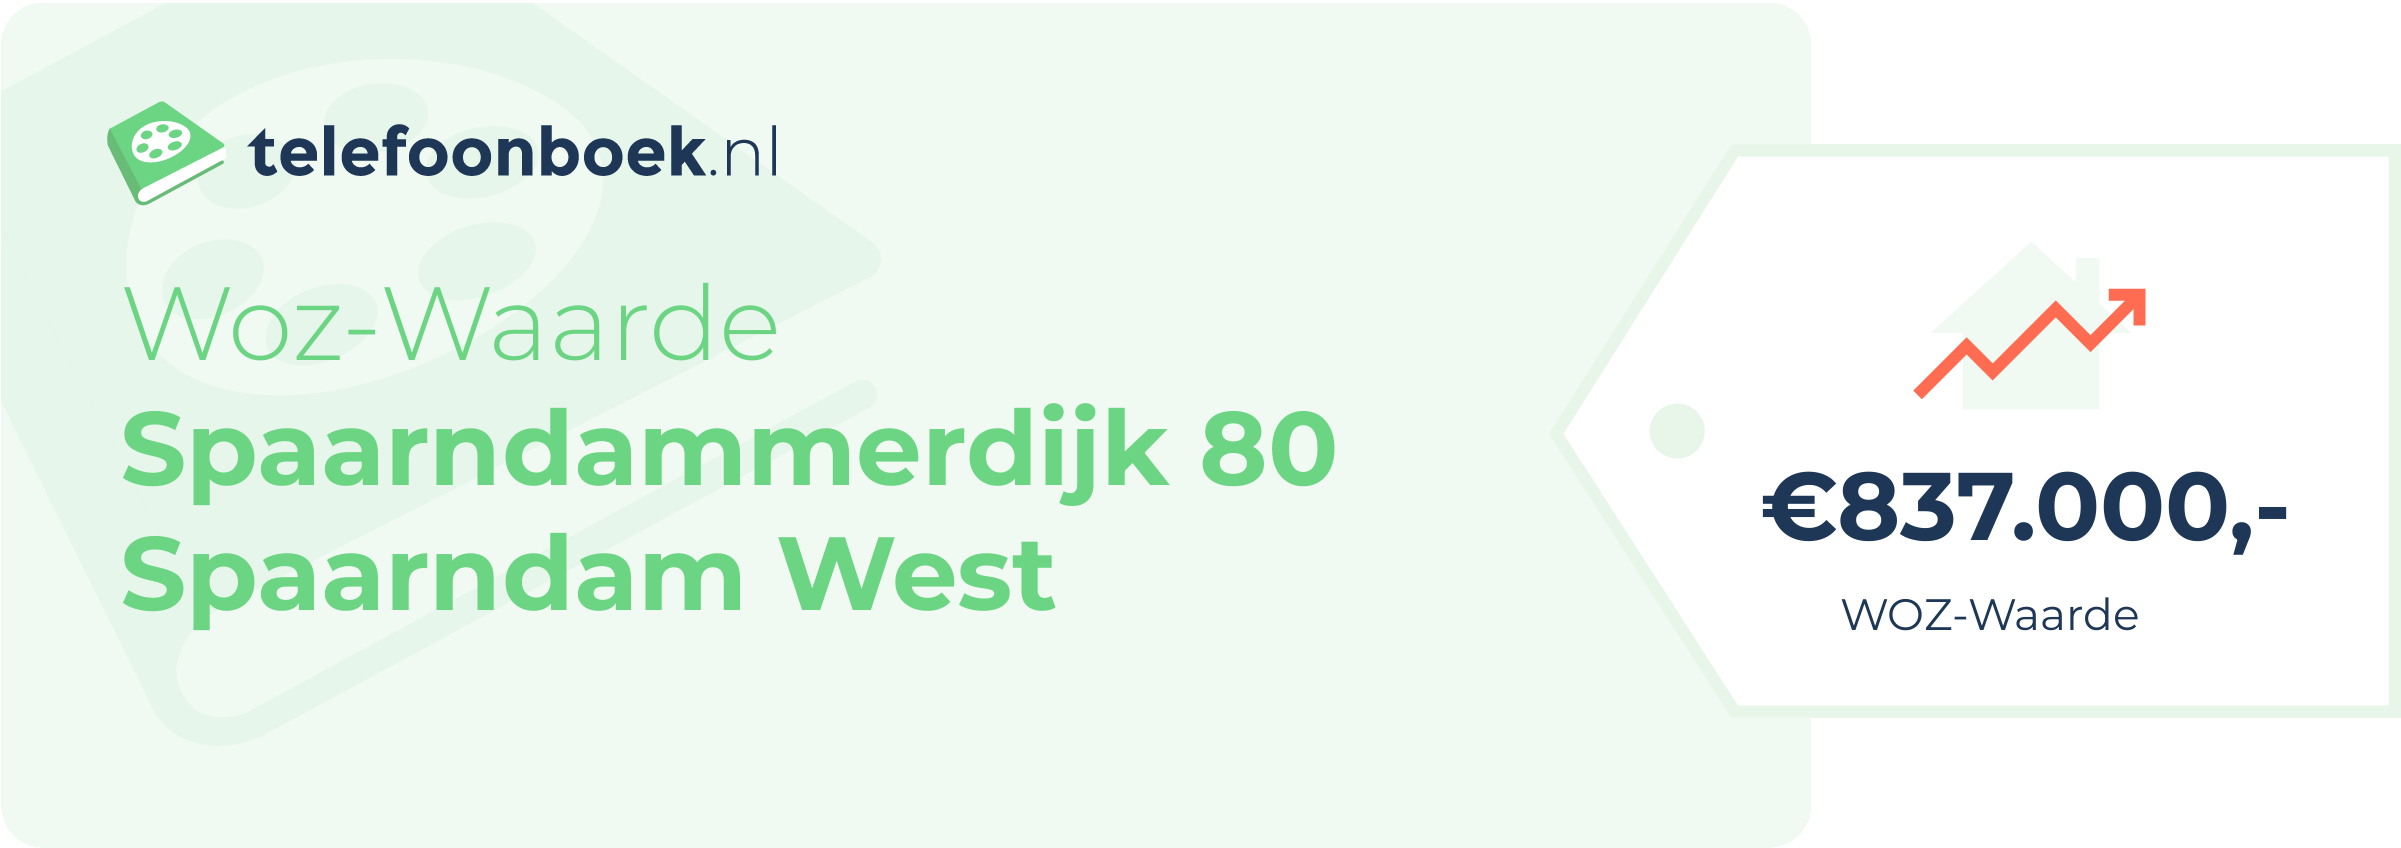 WOZ-waarde Spaarndammerdijk 80 Spaarndam West